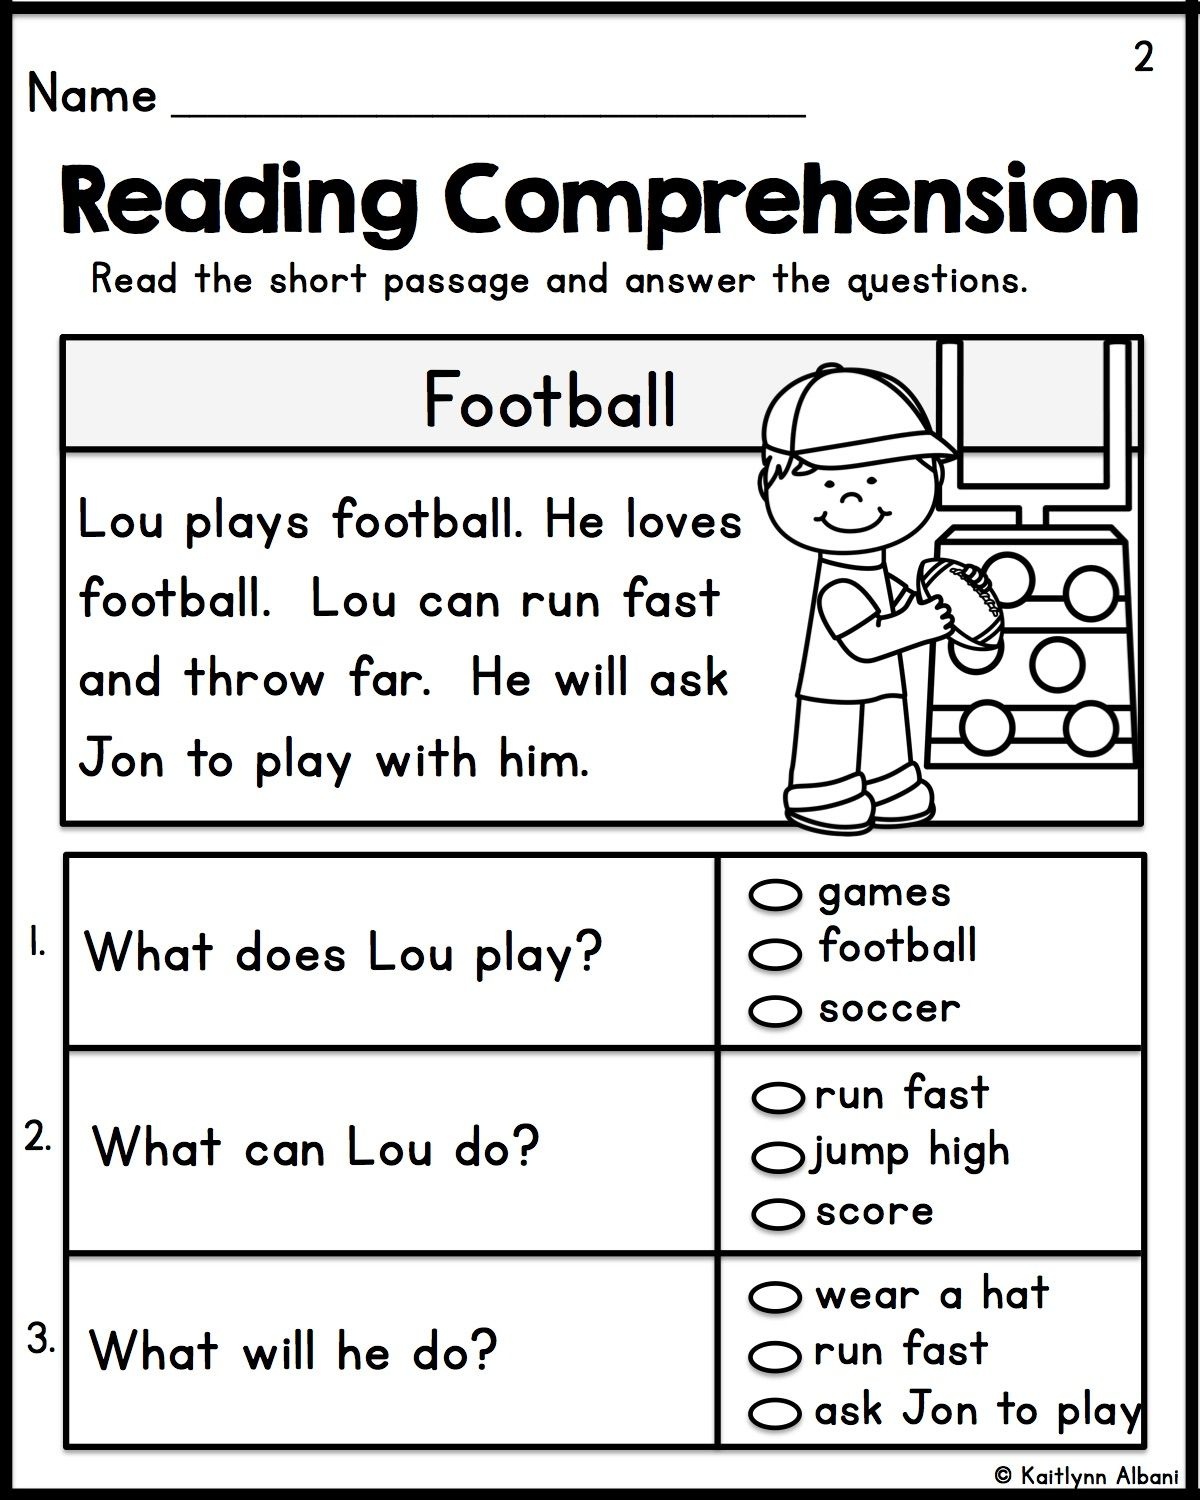 Kindergarten Reading Comprehension Passages - Set 1 | Teacher - Free Printable Reading Comprehension Worksheets For Kindergarten